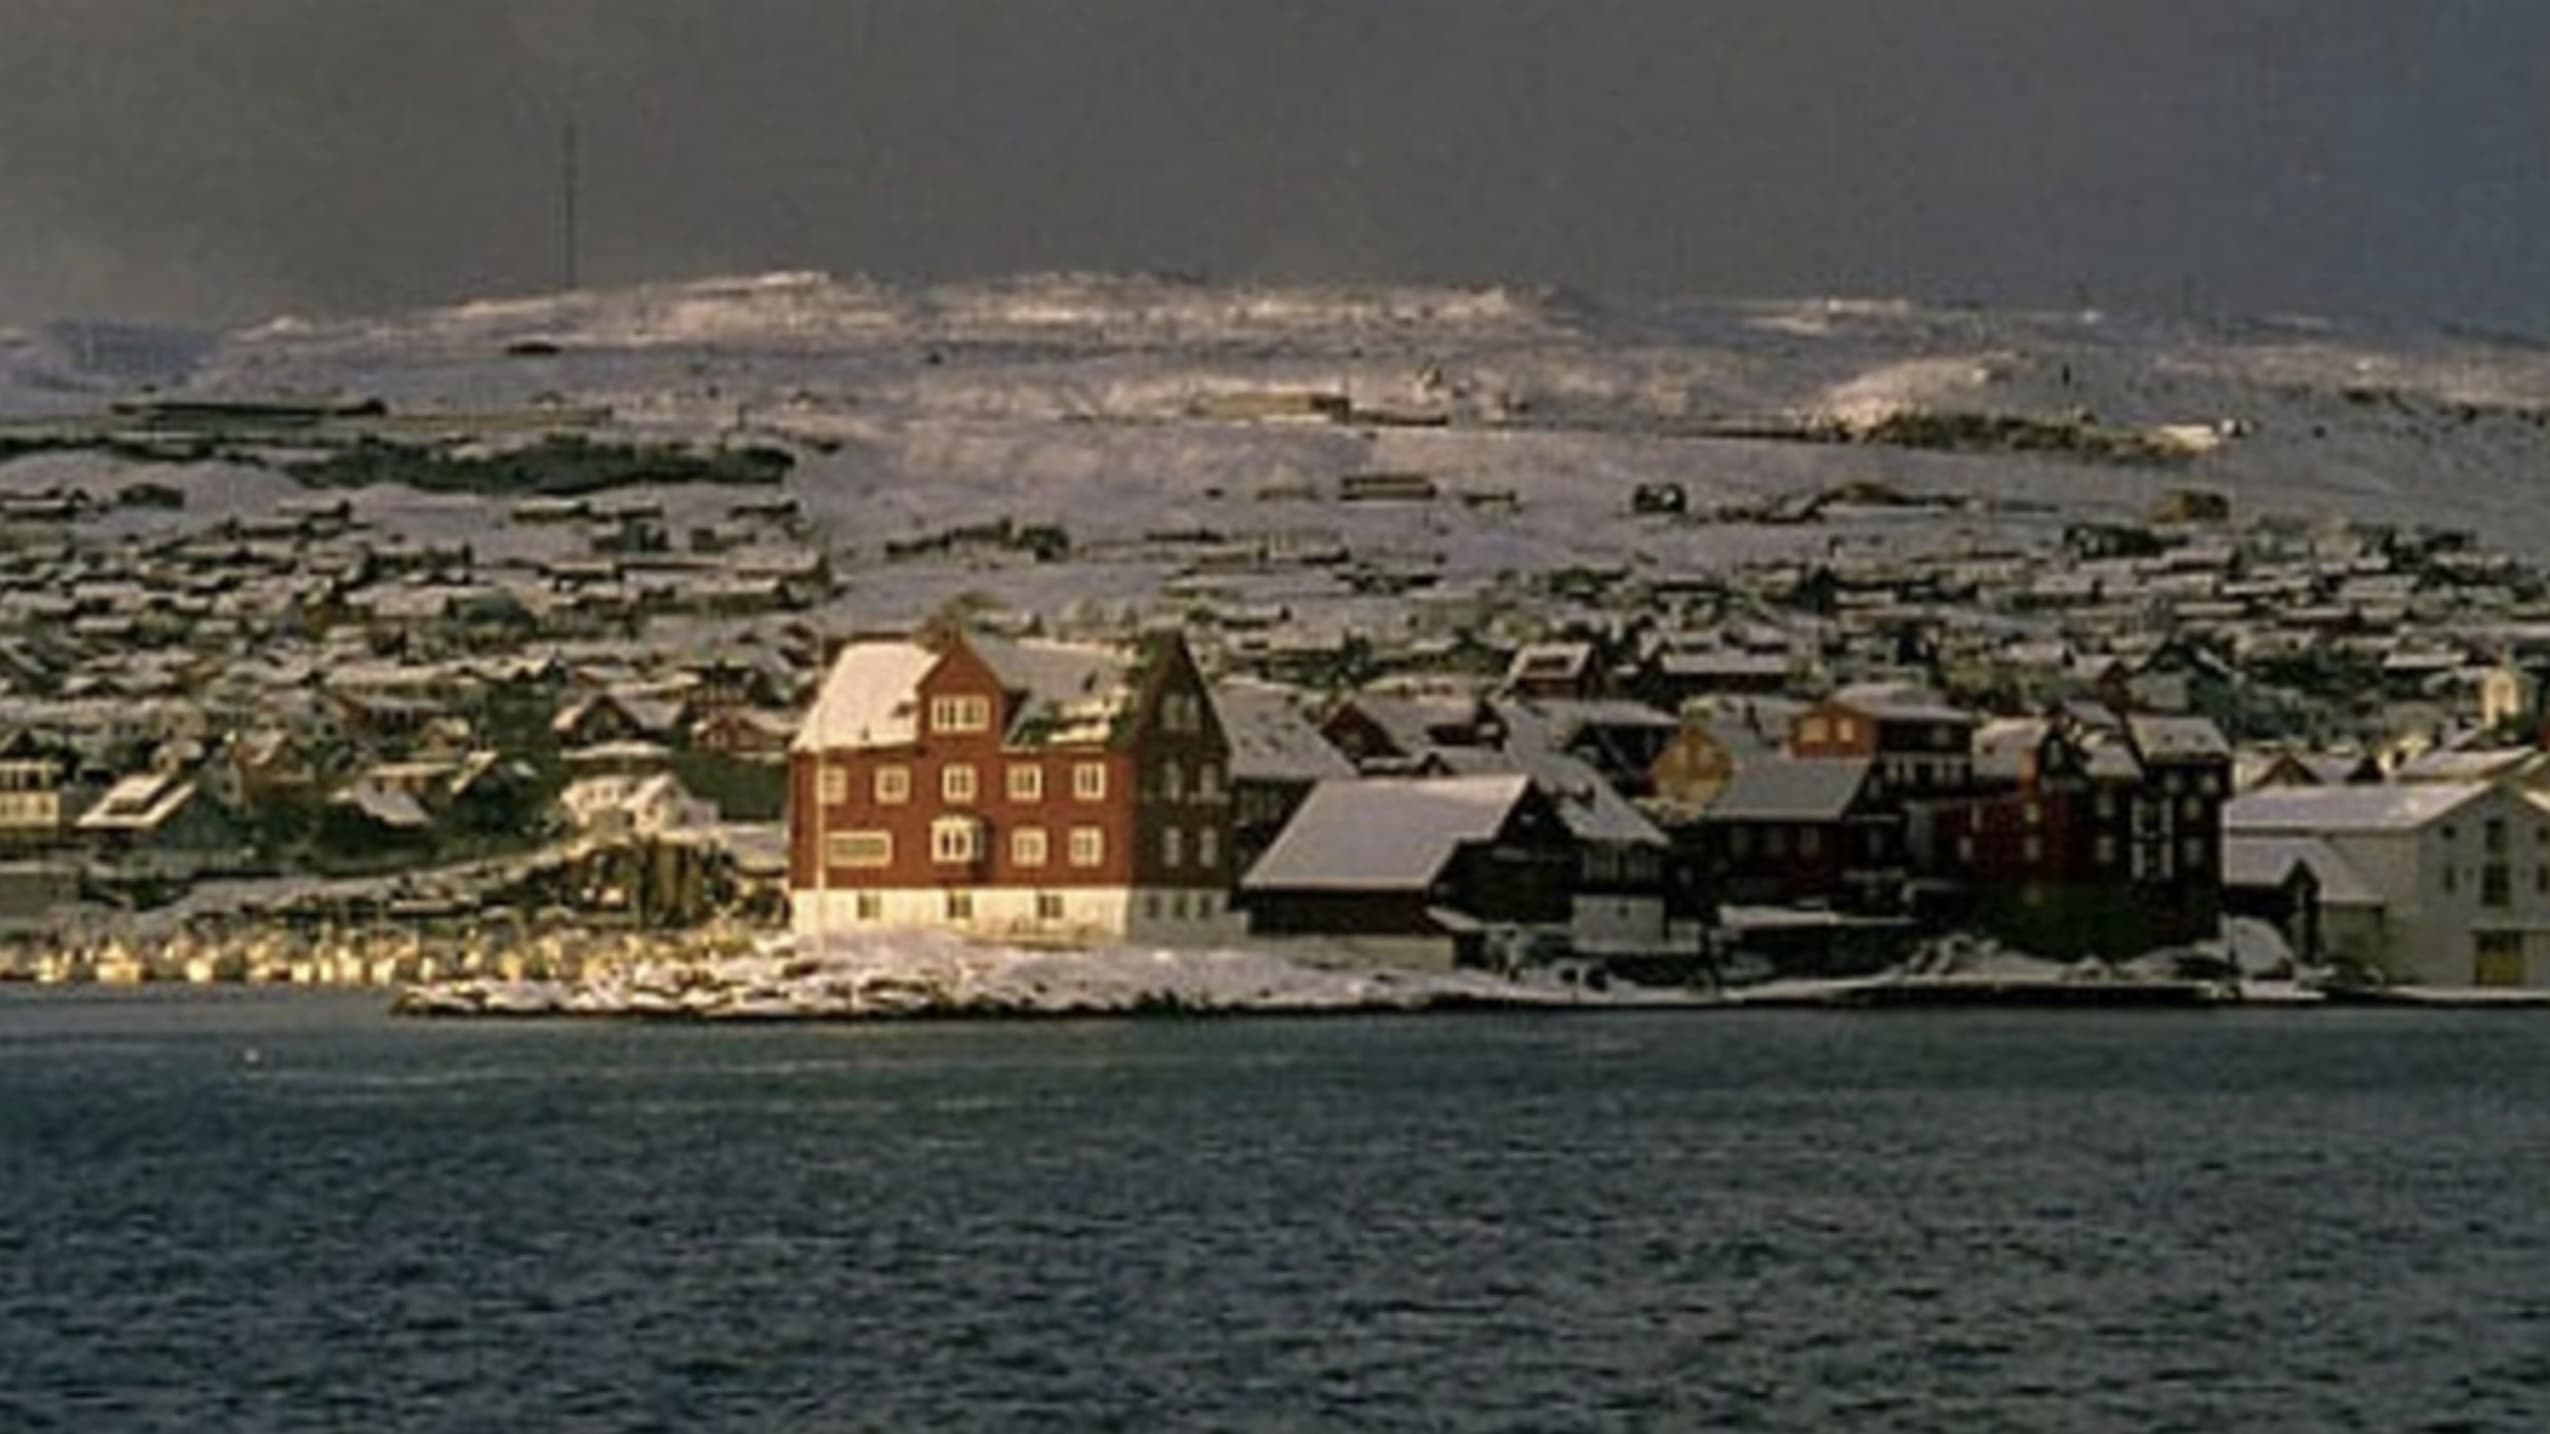 Færøerne.dk (2003)